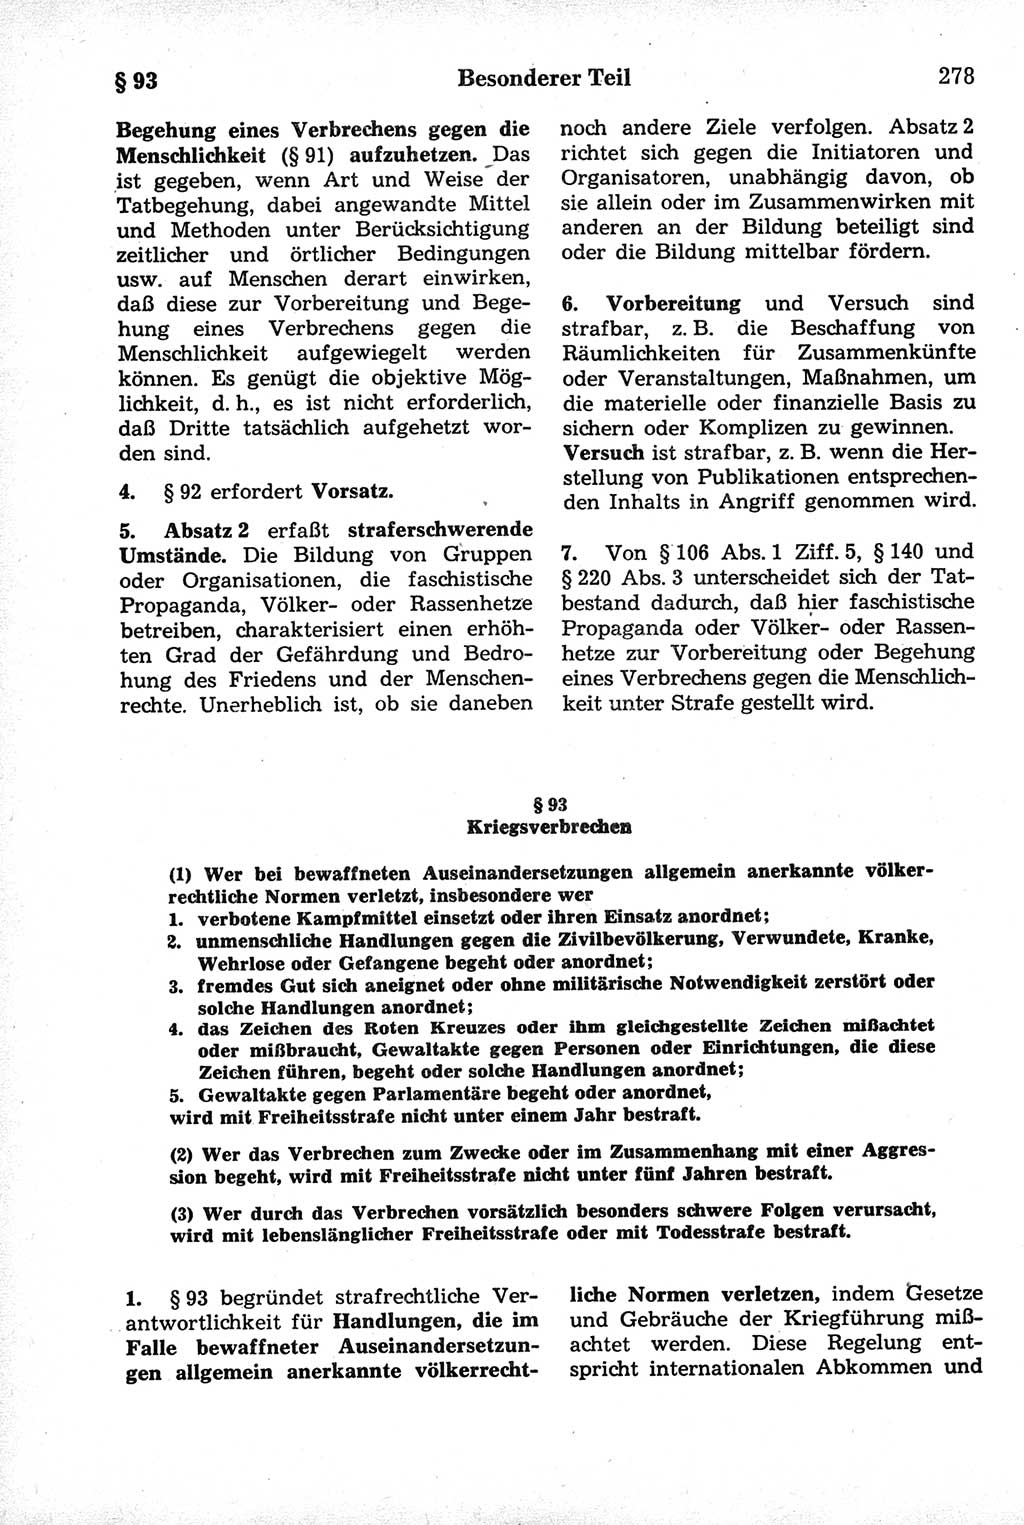 Strafrecht der Deutschen Demokratischen Republik (DDR), Kommentar zum Strafgesetzbuch (StGB) 1981, Seite 278 (Strafr. DDR Komm. StGB 1981, S. 278)